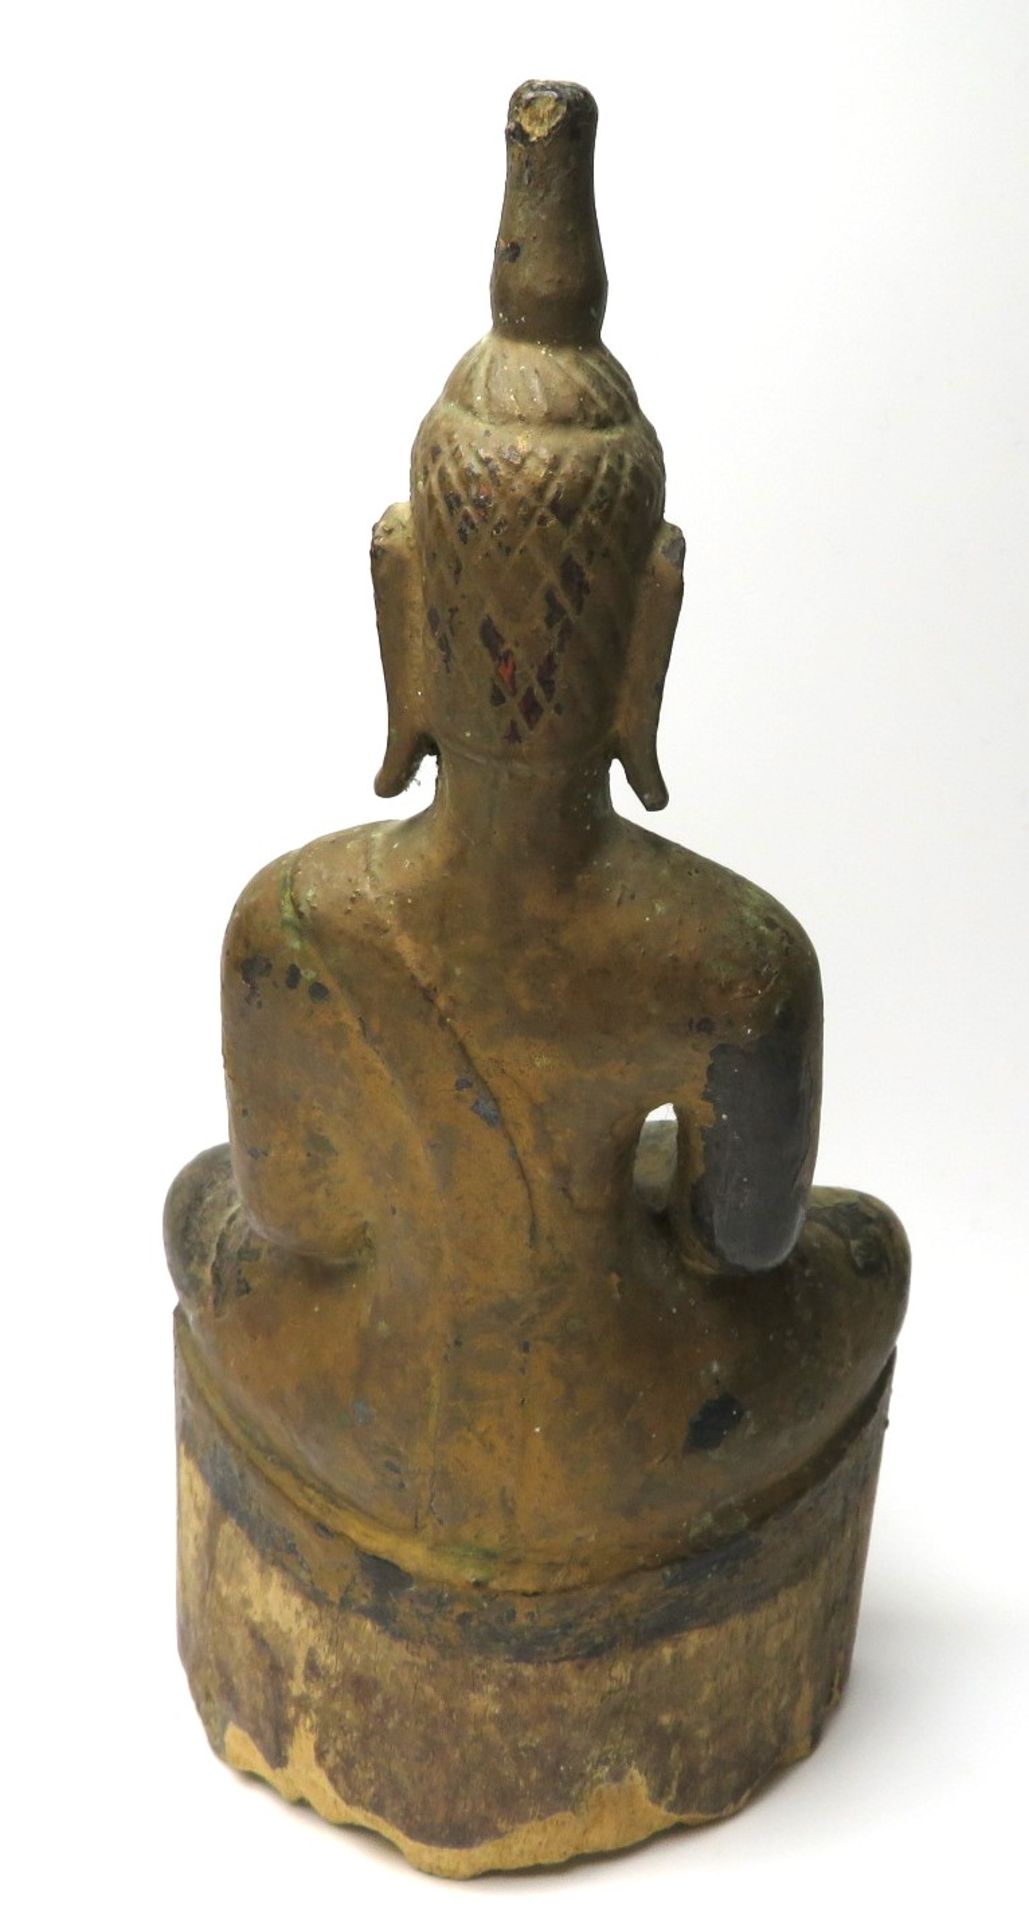 Sitzender Buddha im Lotussitz, Südostasien, antik, Holz geschnitzt, gefasst, best., 19,5 x 9,5 x 5, - Image 2 of 3